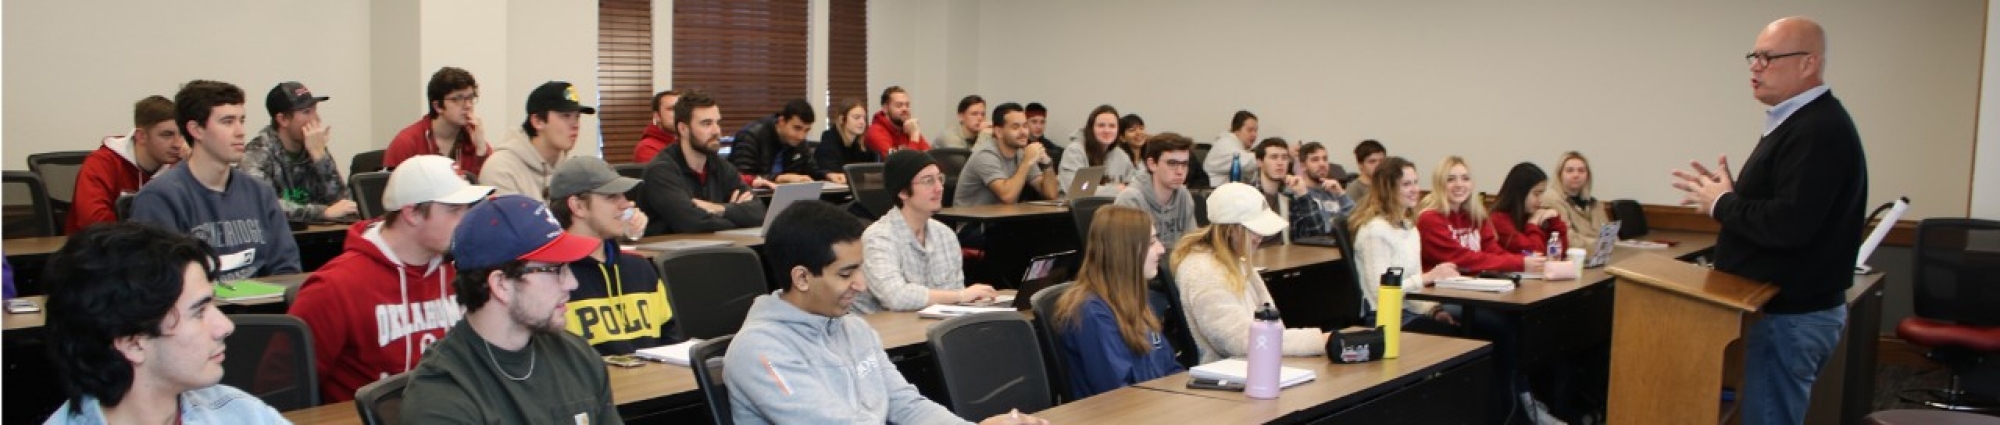 Entrepreneurship professor speaks to a room of students